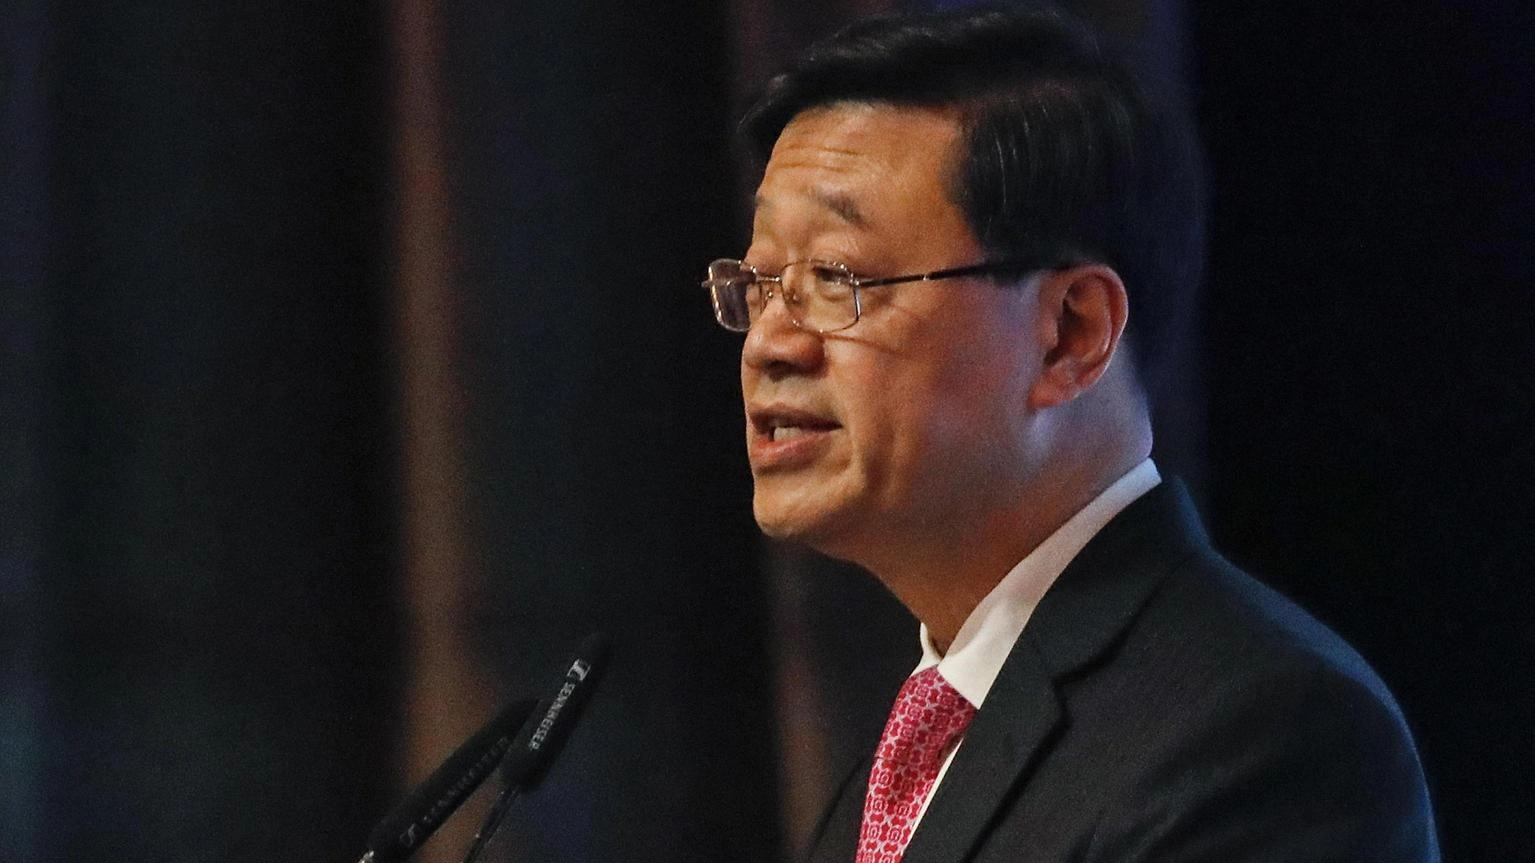 'Hong Kong avrà la sua legge sulla sicurezza nazionale'